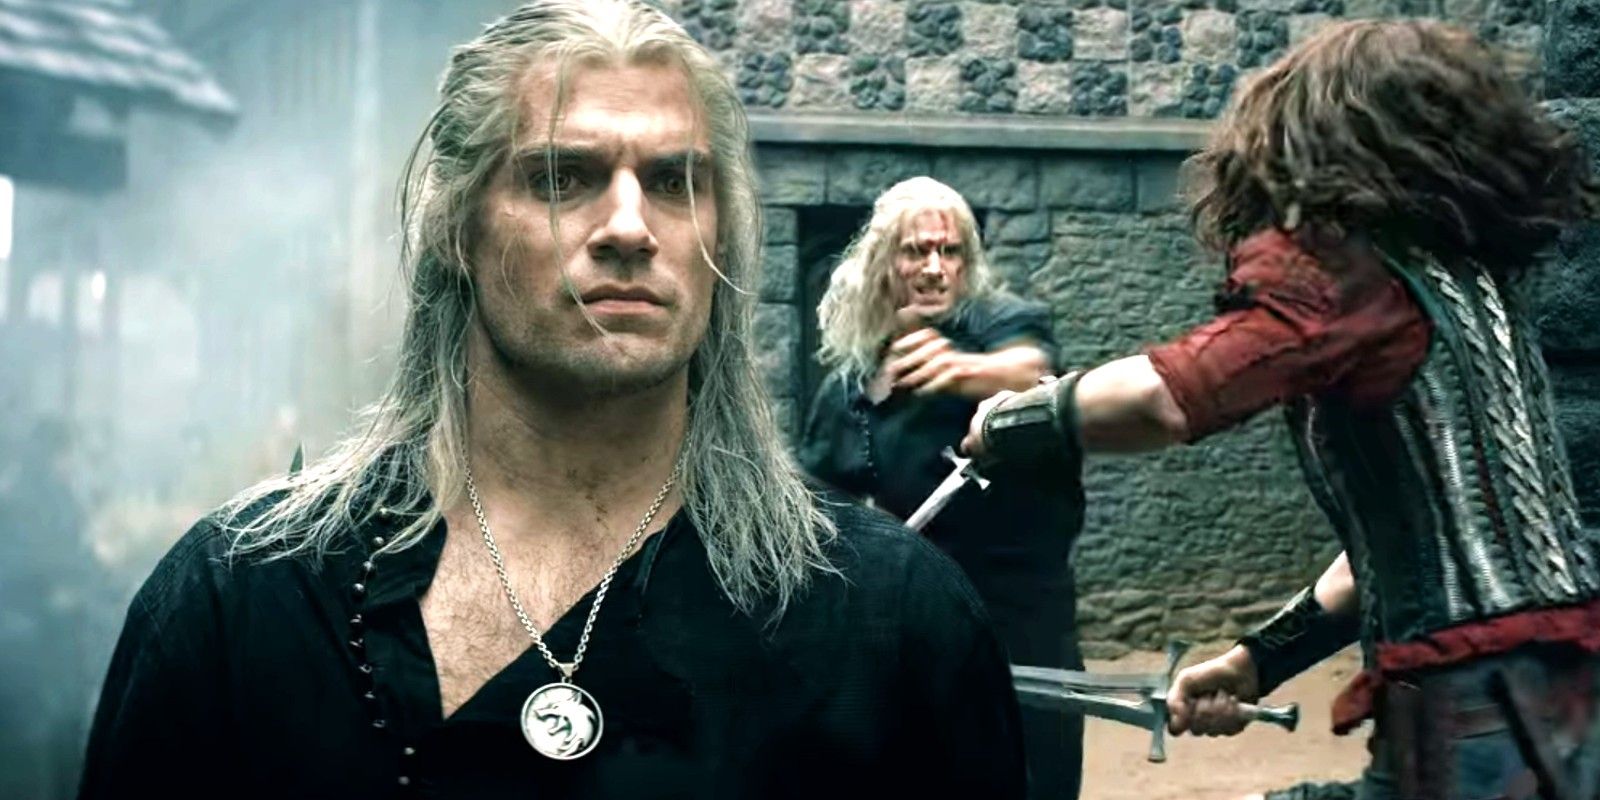 Immagine personalizzata di Geralt nella prima stagione che combatte con una combattente donna